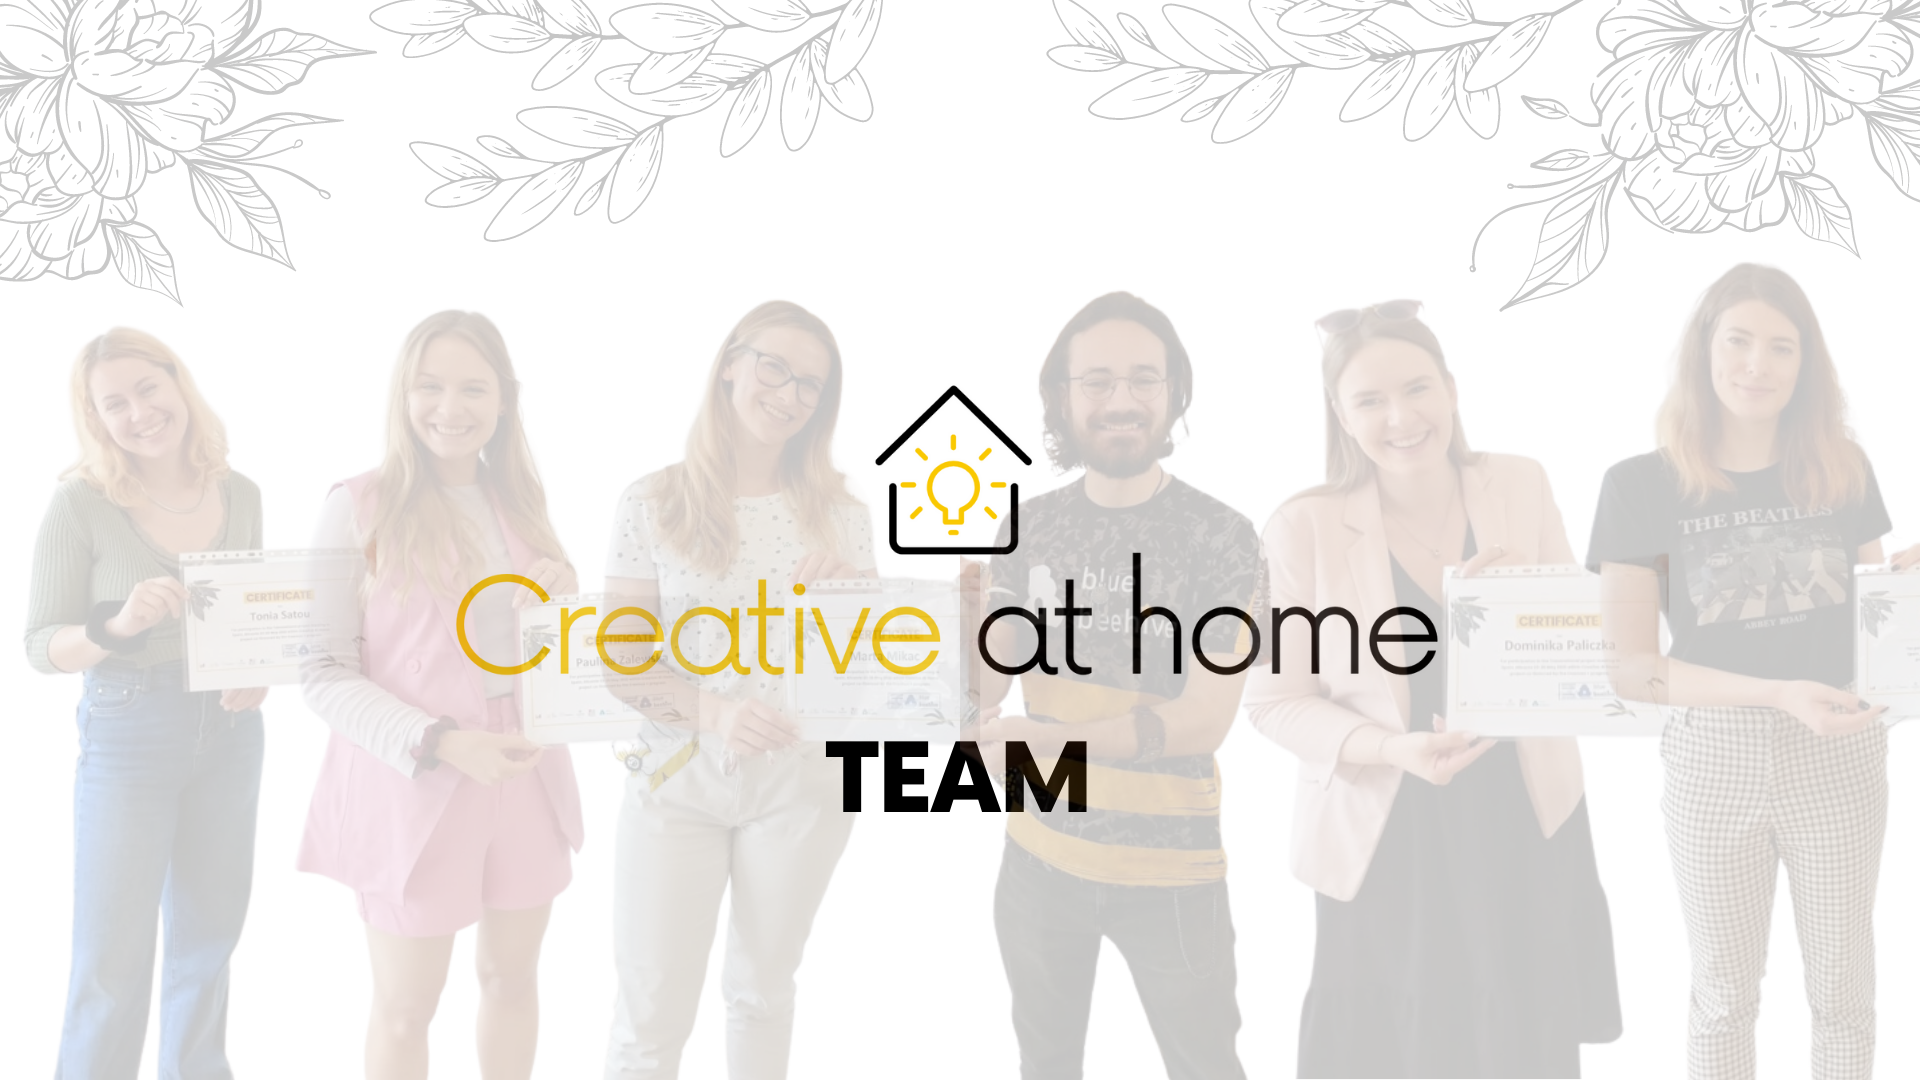 Meet Creative at home team!